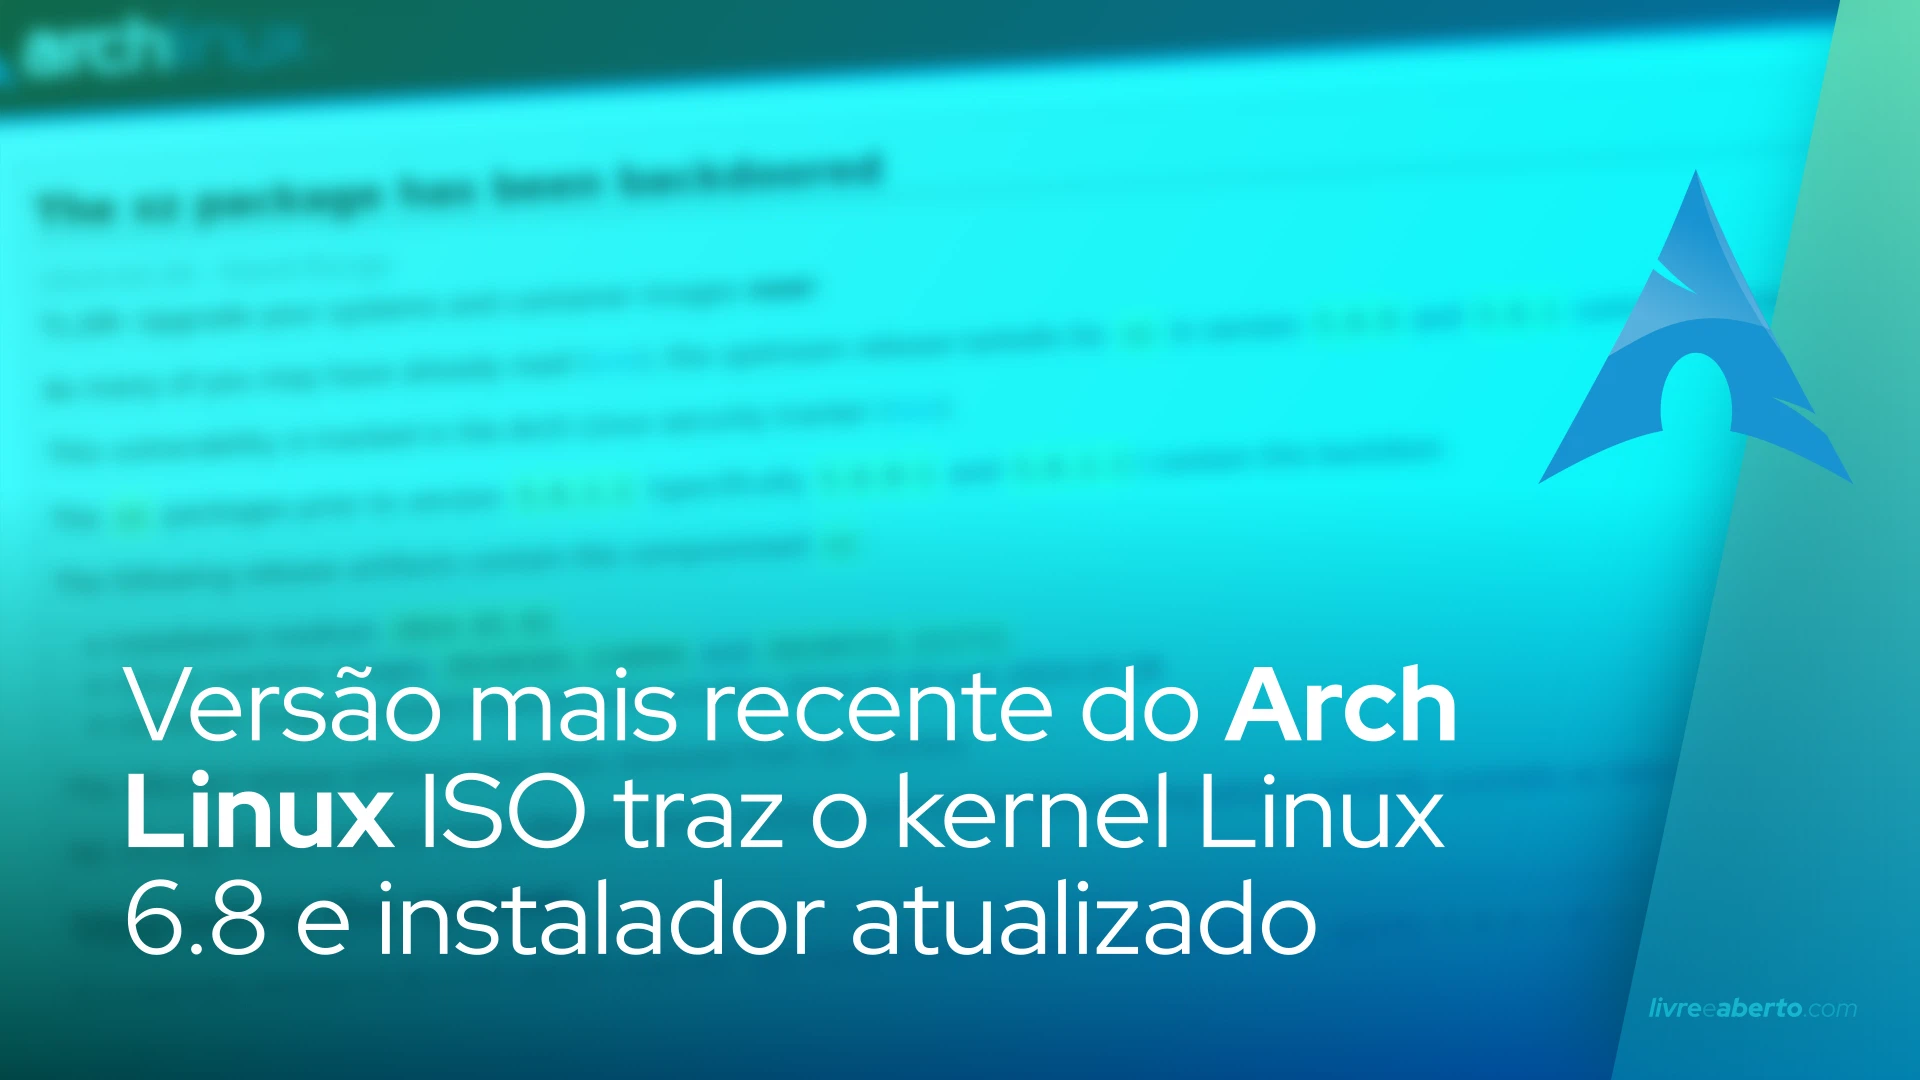 Versão mais recente do Arch Linux ISO traz o kernel Linux 6.8 e instalador atualizado